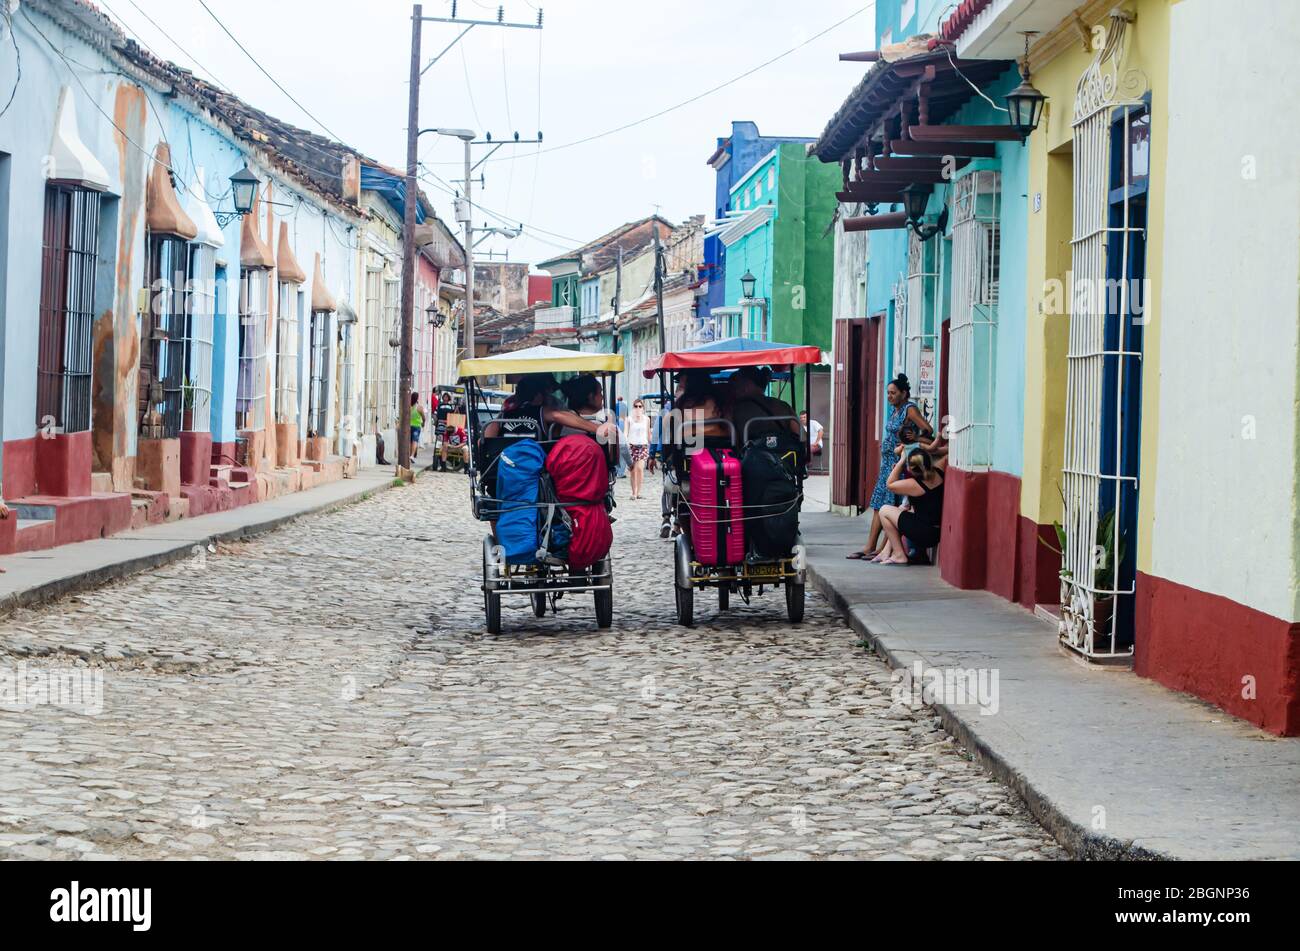 Scène typique dans les rues de Trinidad à Cuba. Les taxis à vélo transportent les touristes vers leur destin en ville Banque D'Images